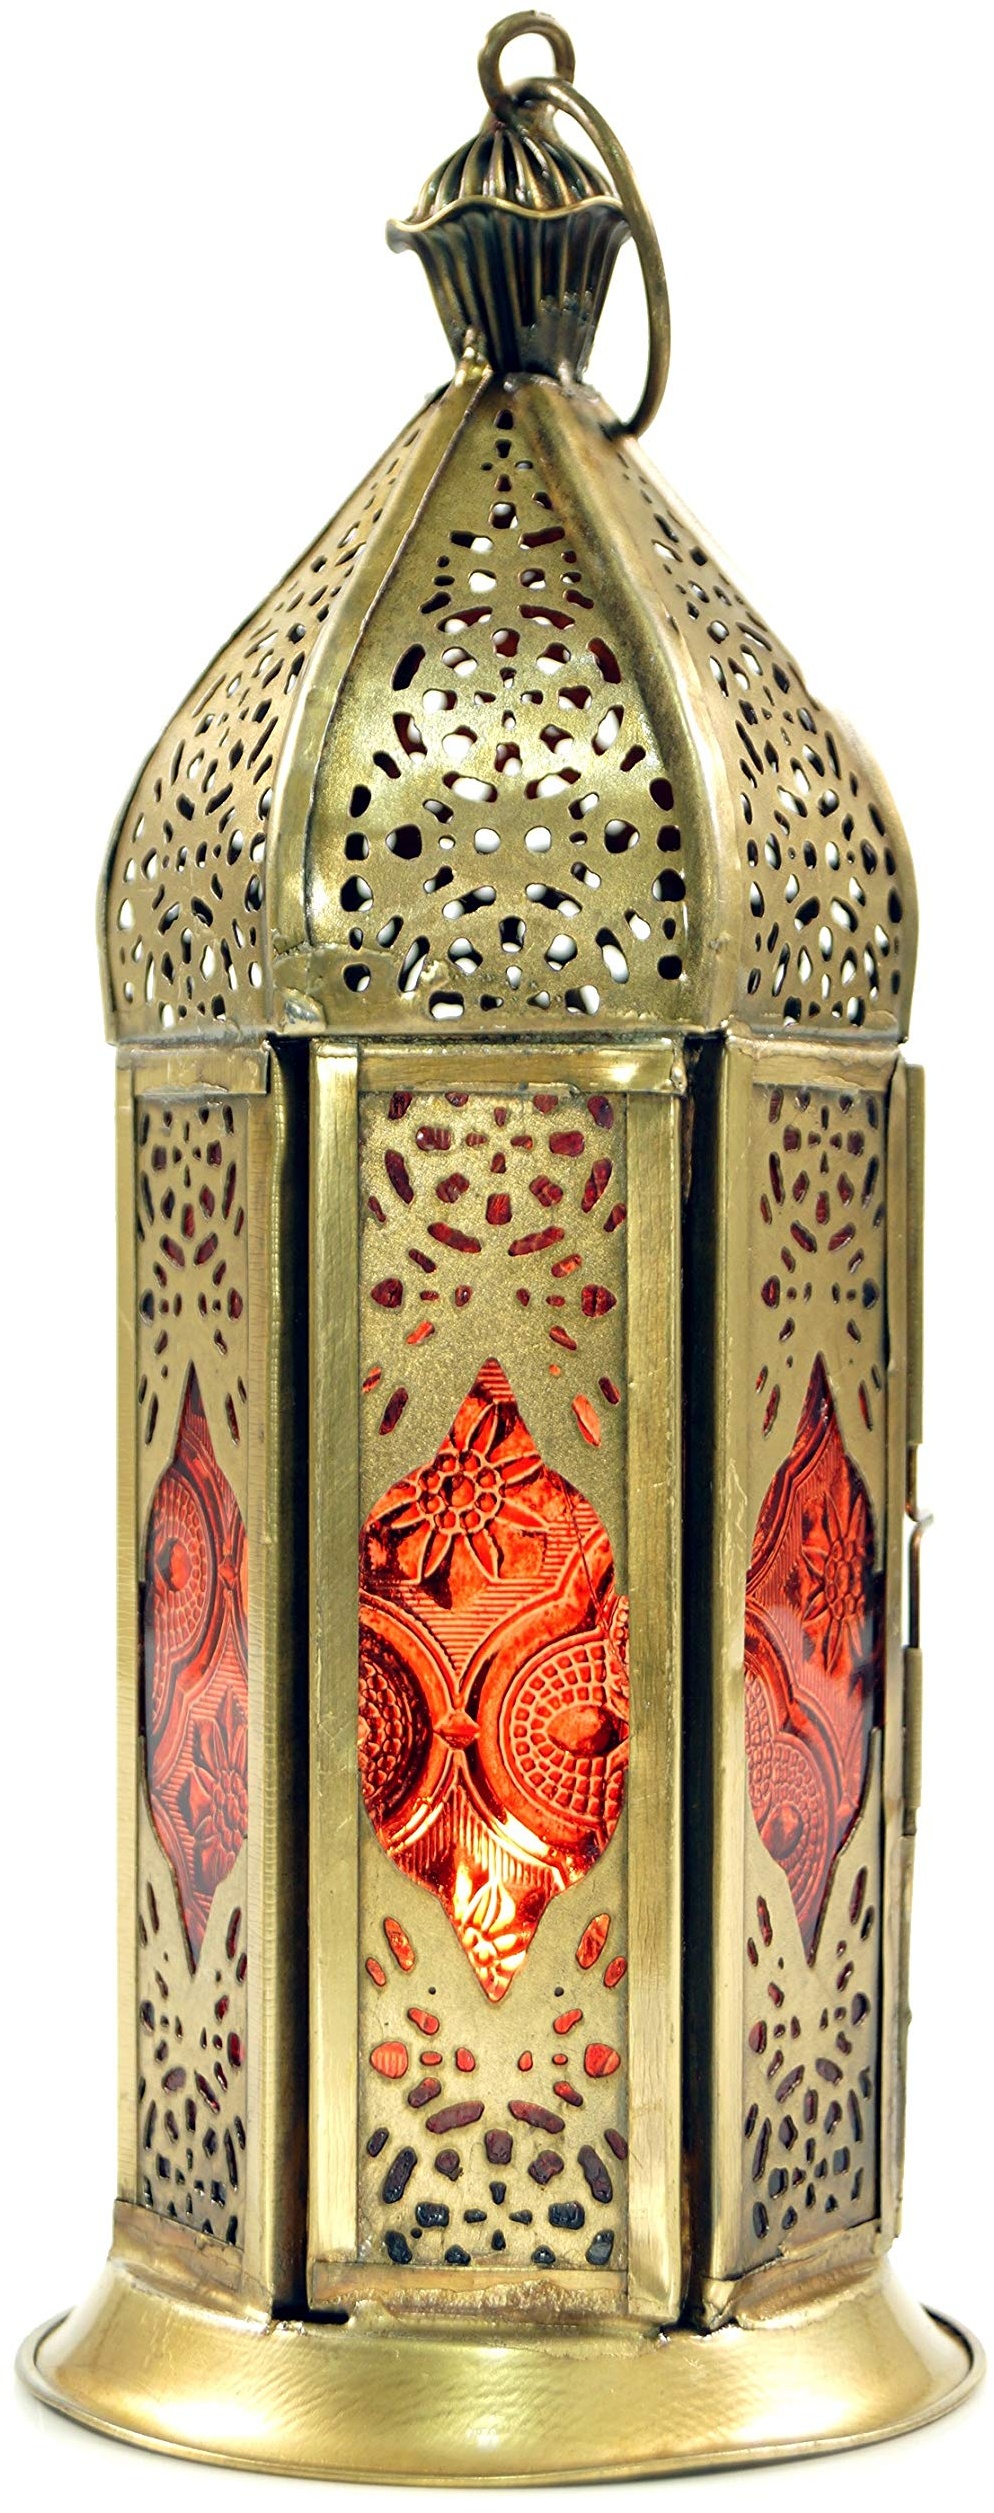 GURU SHOP Orientalische Metall/Glas Laterne in Marrokanischem Design, Vintage Windlicht, Orange, Farbe: Orange, 20x8x8 cm, Orientalische Laternen